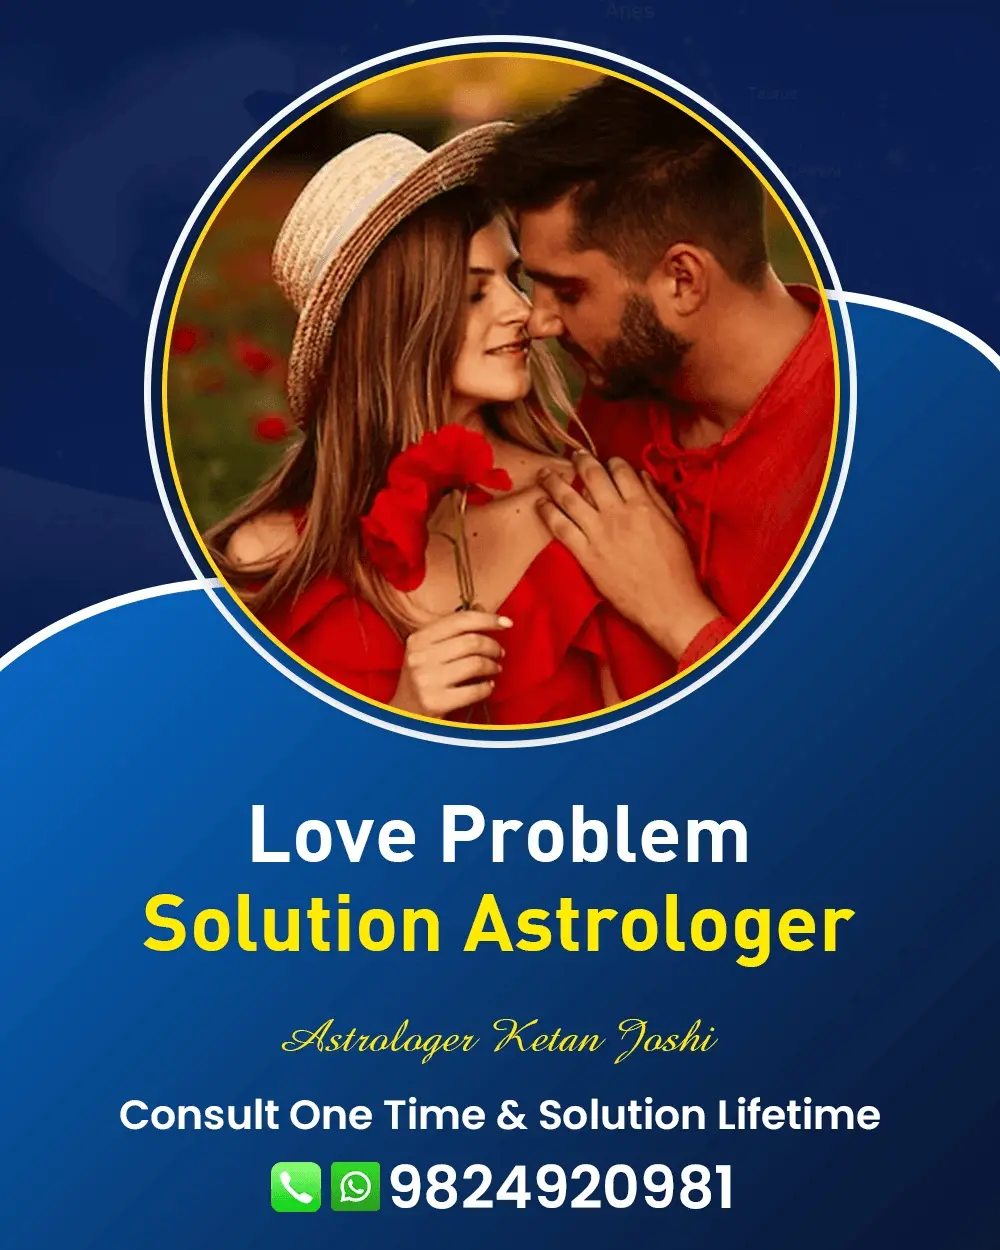 Love Problem Astrologer In Mumbai